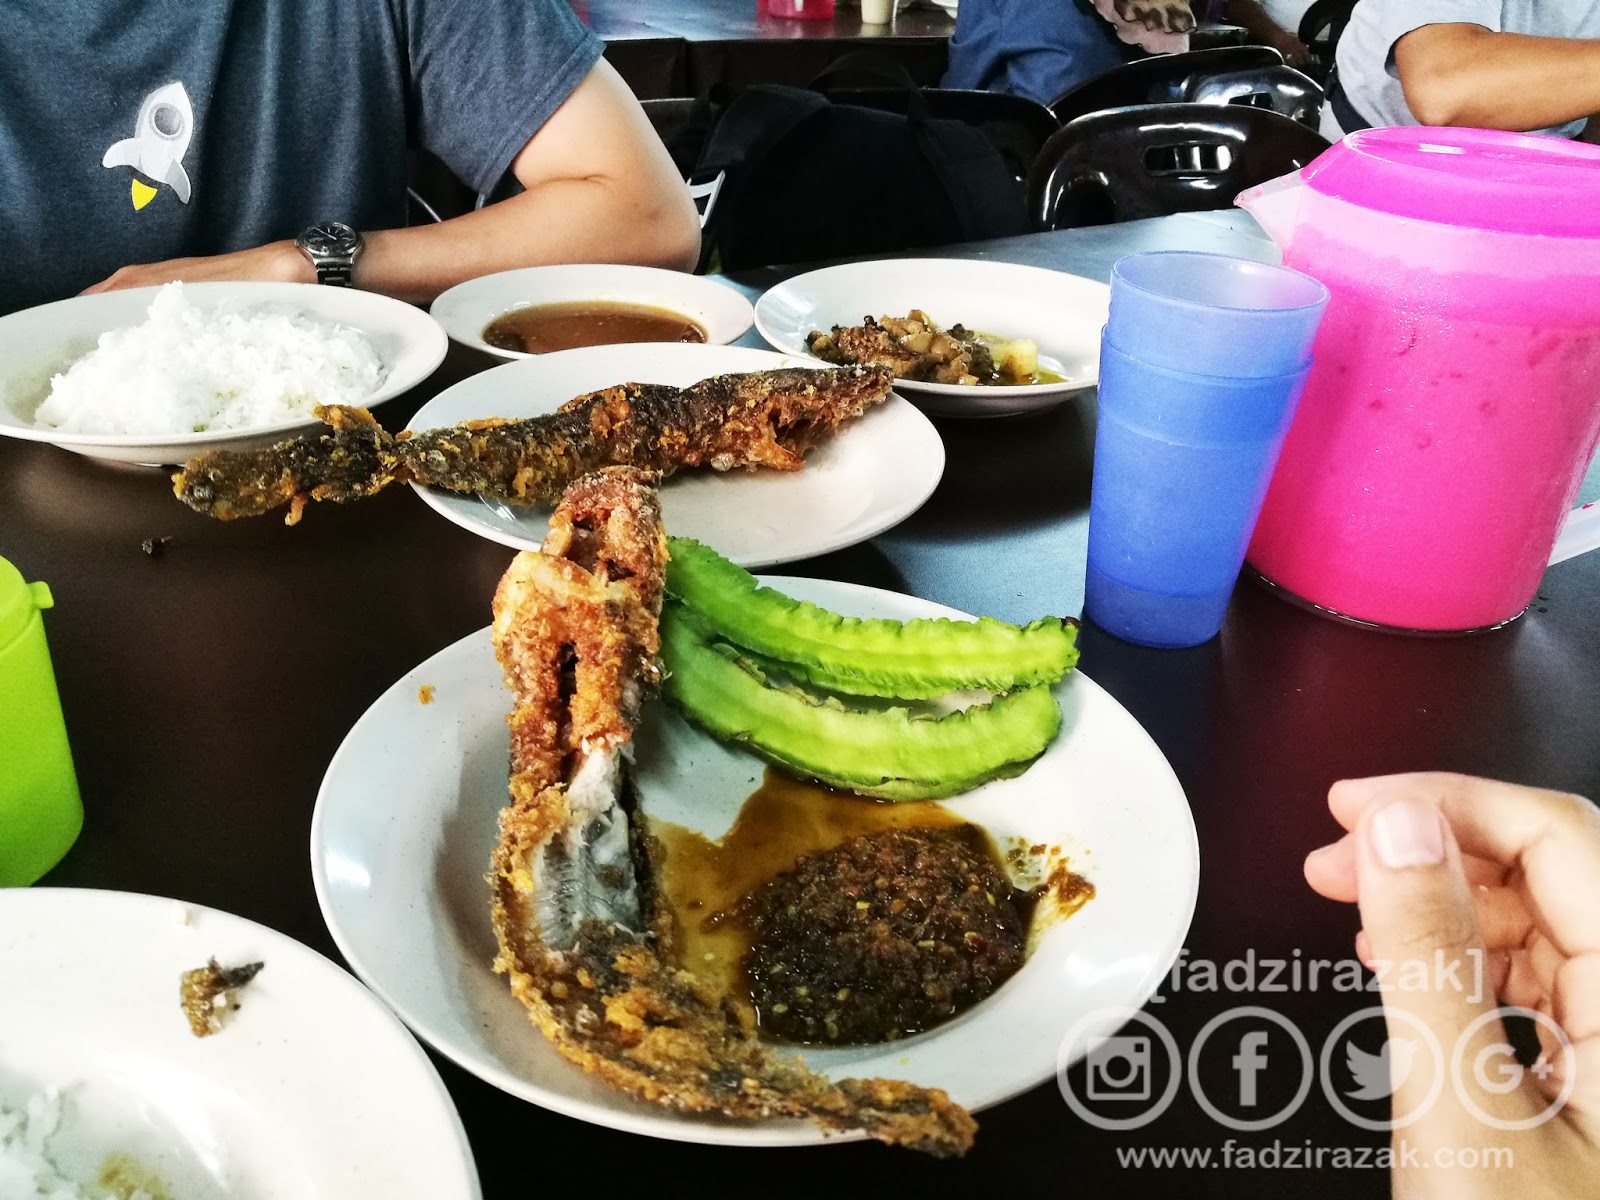 Tempat Makan Best Di Kota Bharu - Restoran Nasi Ulam Cikgu